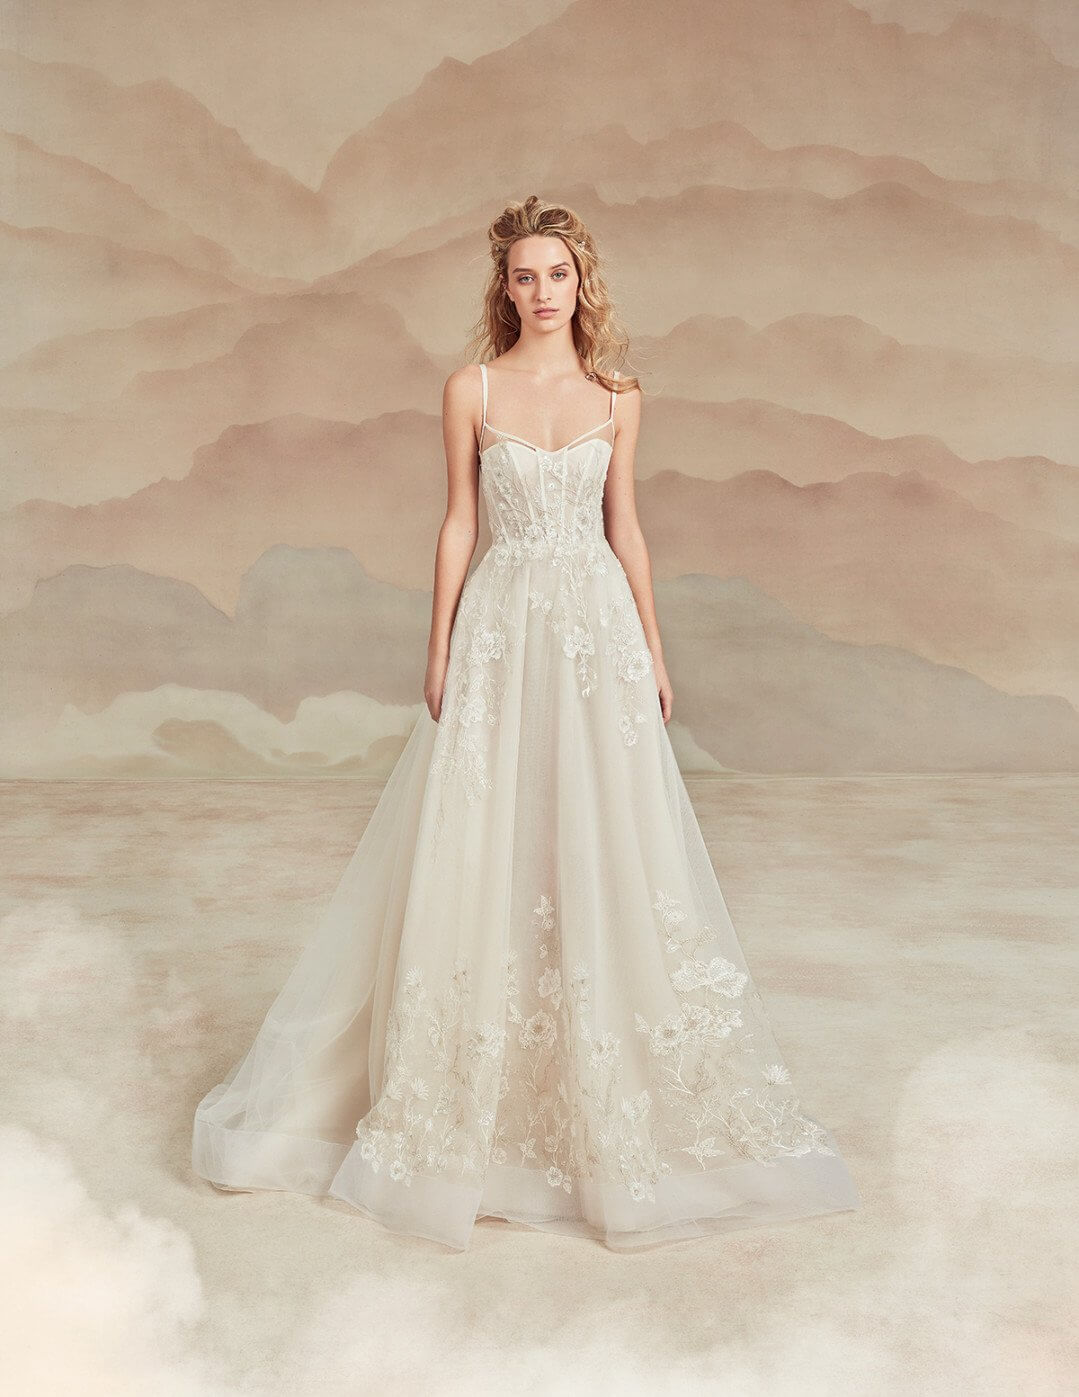 New York Bridal Fashion Week welke trouwjurken dragen we in 2022?